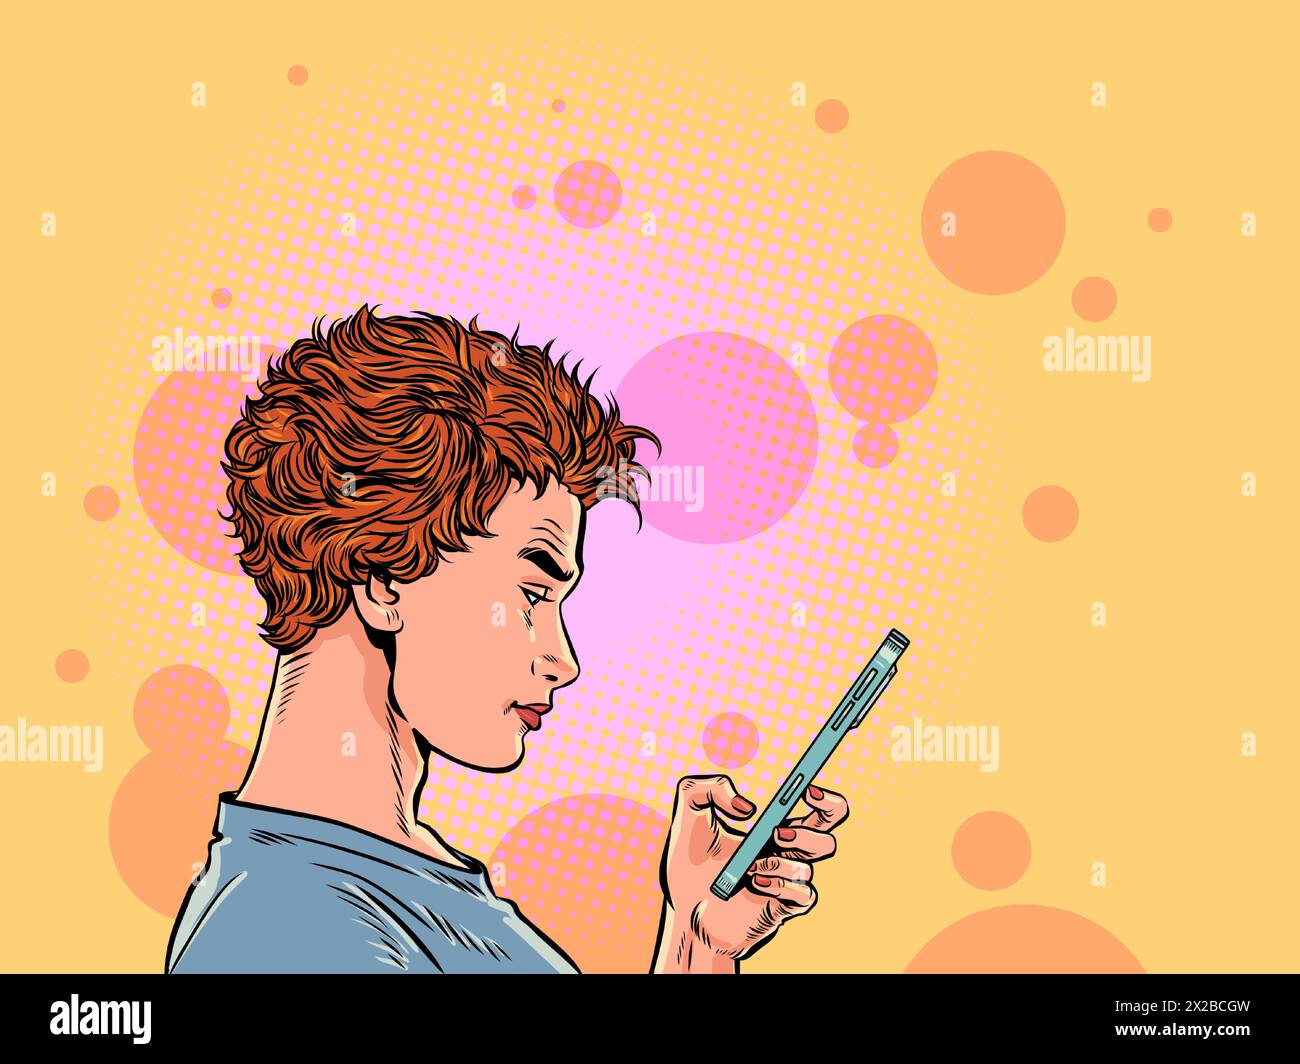 Das Mädchen schaut ernsthaft ans Telefon. Auf Marketplace-Sites nach Produkten suchen. Korrespondenz über Smartphone. Comic-Comic-Pop-Art-Retro-Vektor-Illustration Stock Vektor